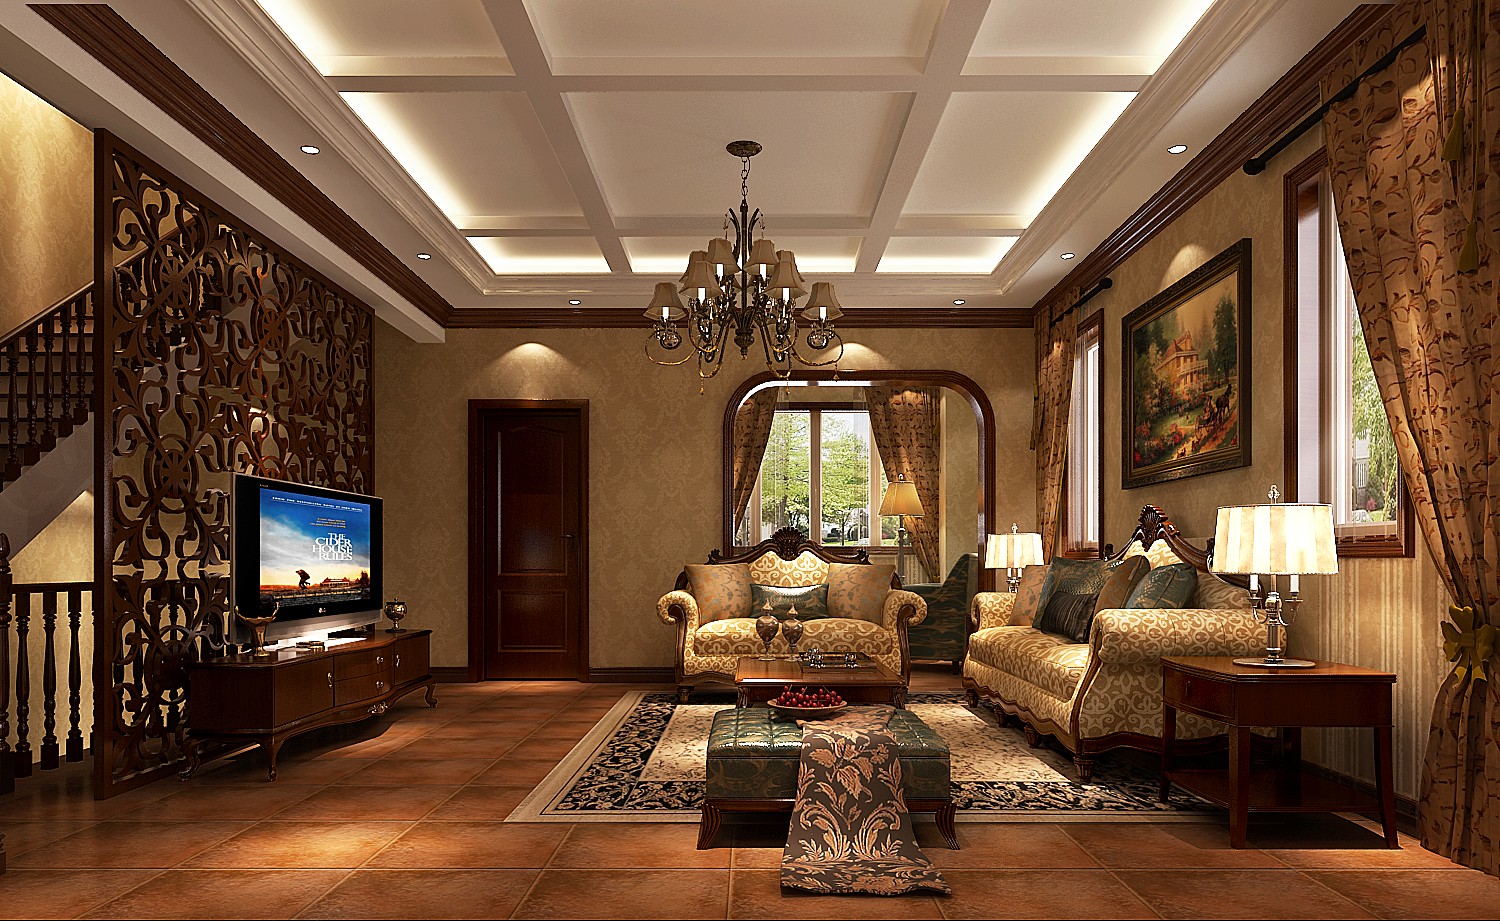 龙湖香醍溪 高度国际 托斯卡纳 客厅图片来自凌军在龙湖香醍溪岸300平米大宅装修的分享